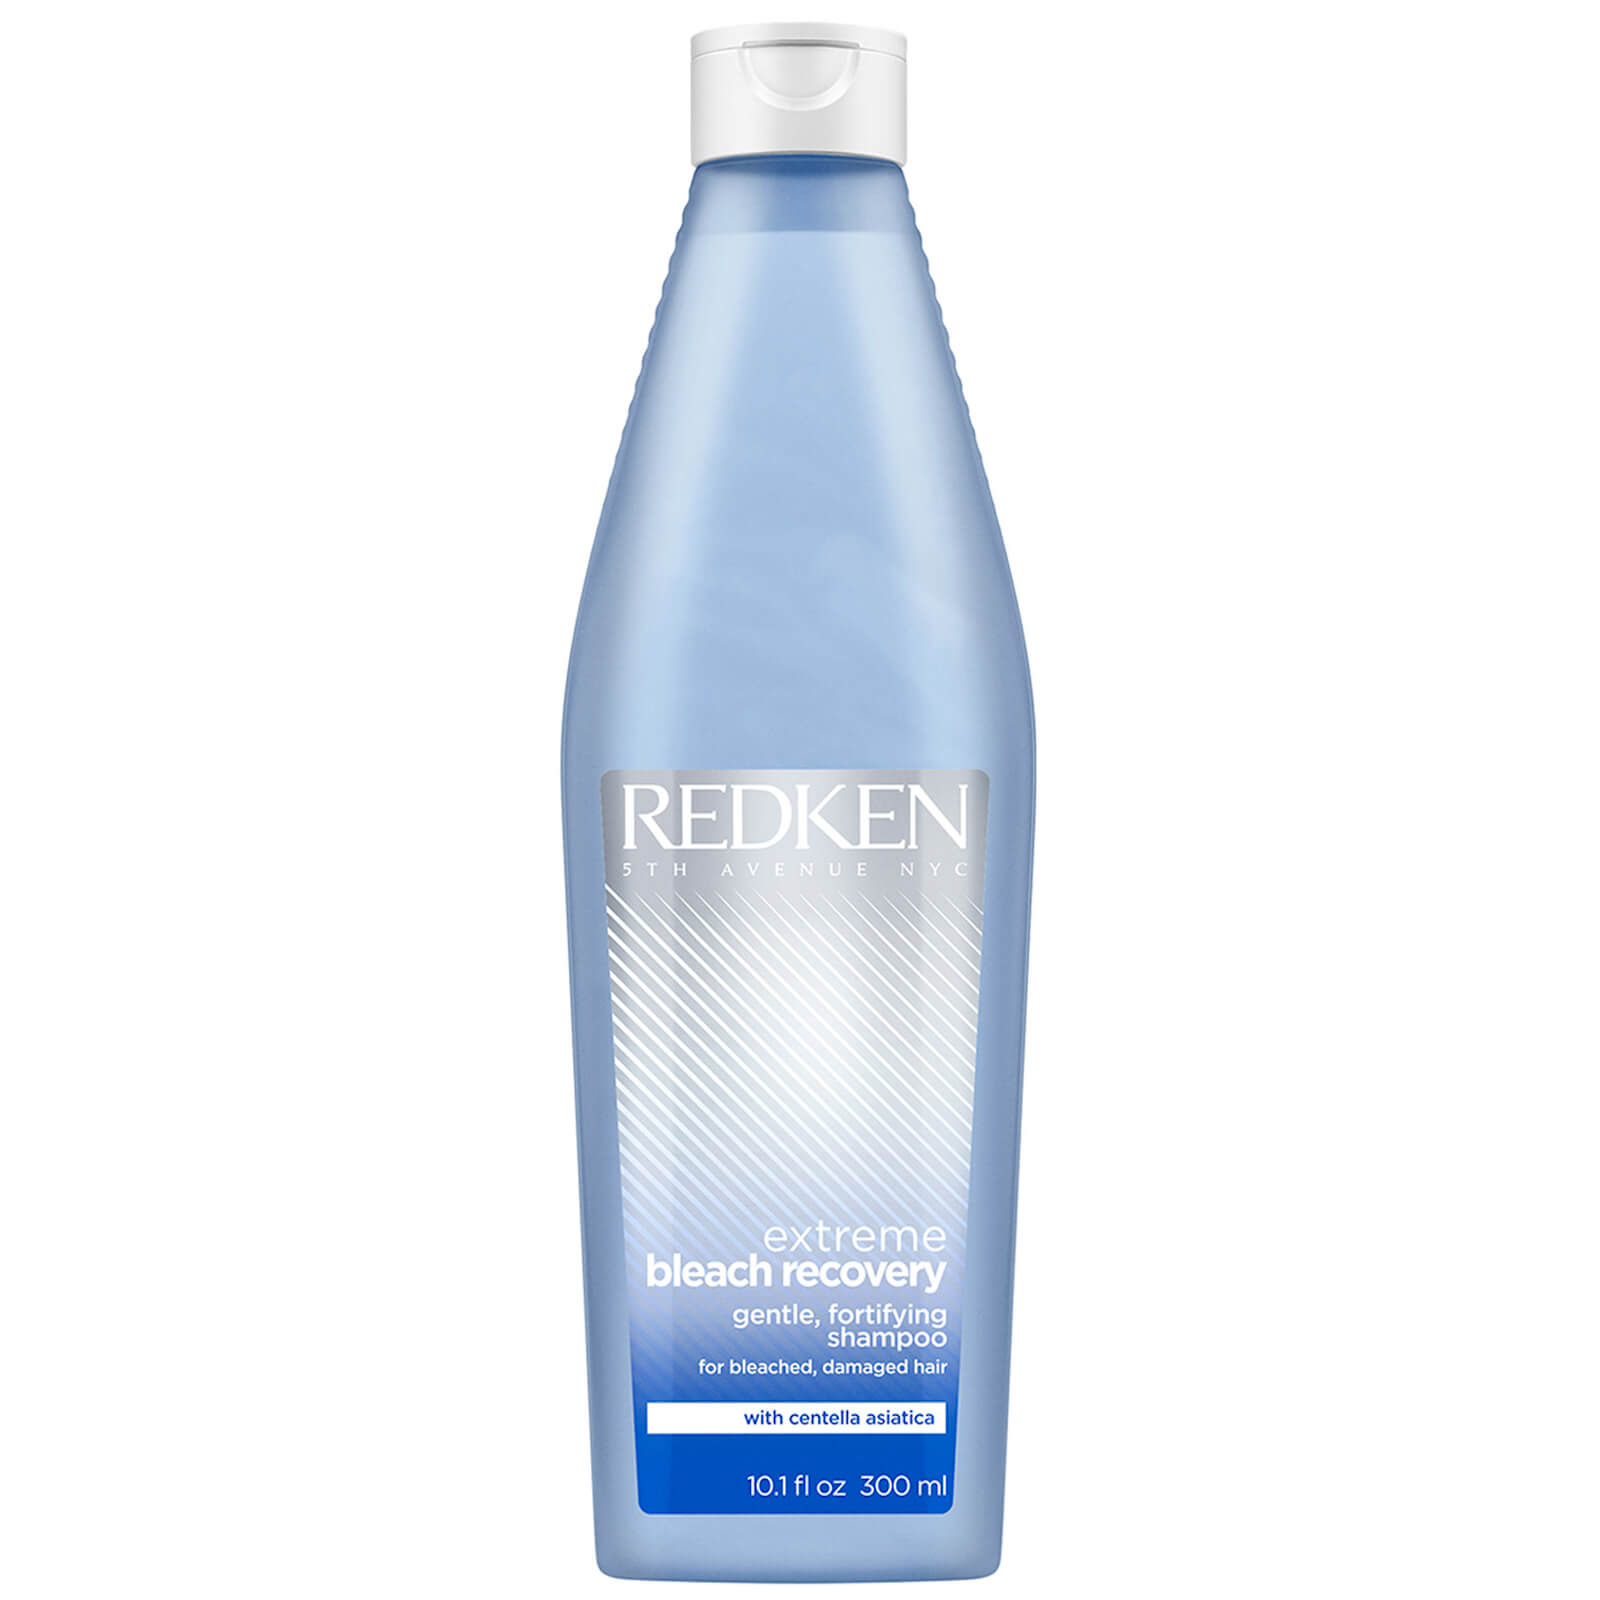 Redken - Redken extreme bleach recovery, Champú específico para el cabello quebradizo después de una decoloración. Formulado para reparar, nutrir y combatir la rigidez del cabello, a la vez que lo limpia.